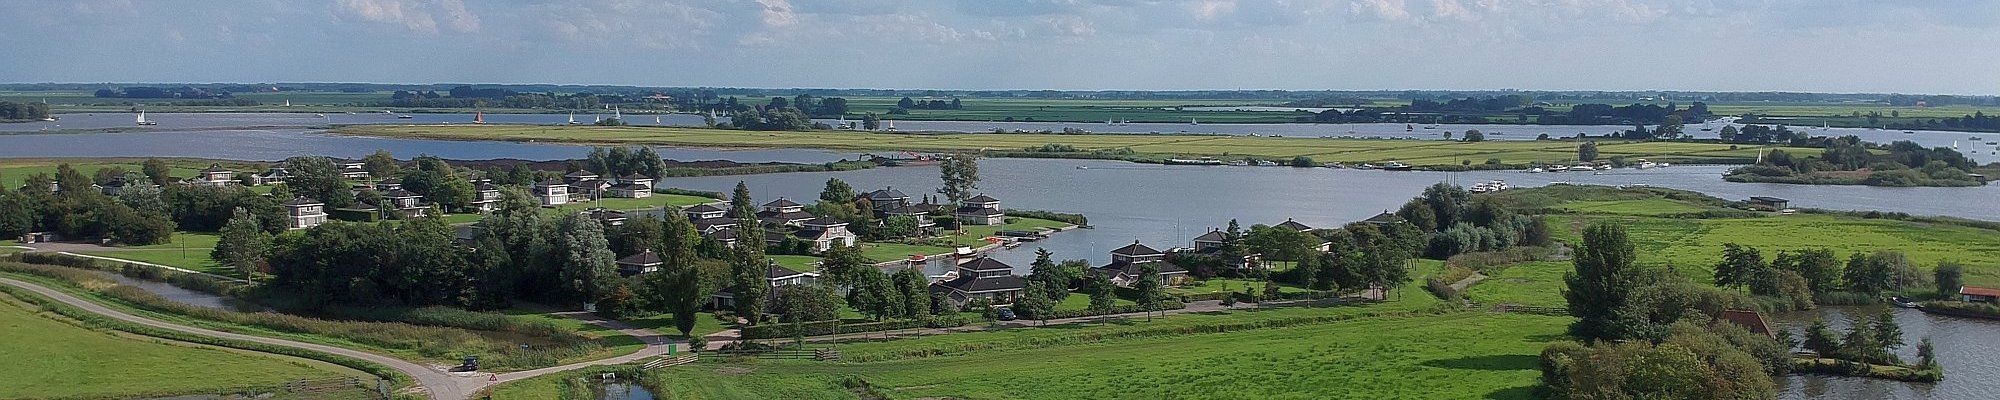 Landschaft in Friesland © press4all auf Pixabay